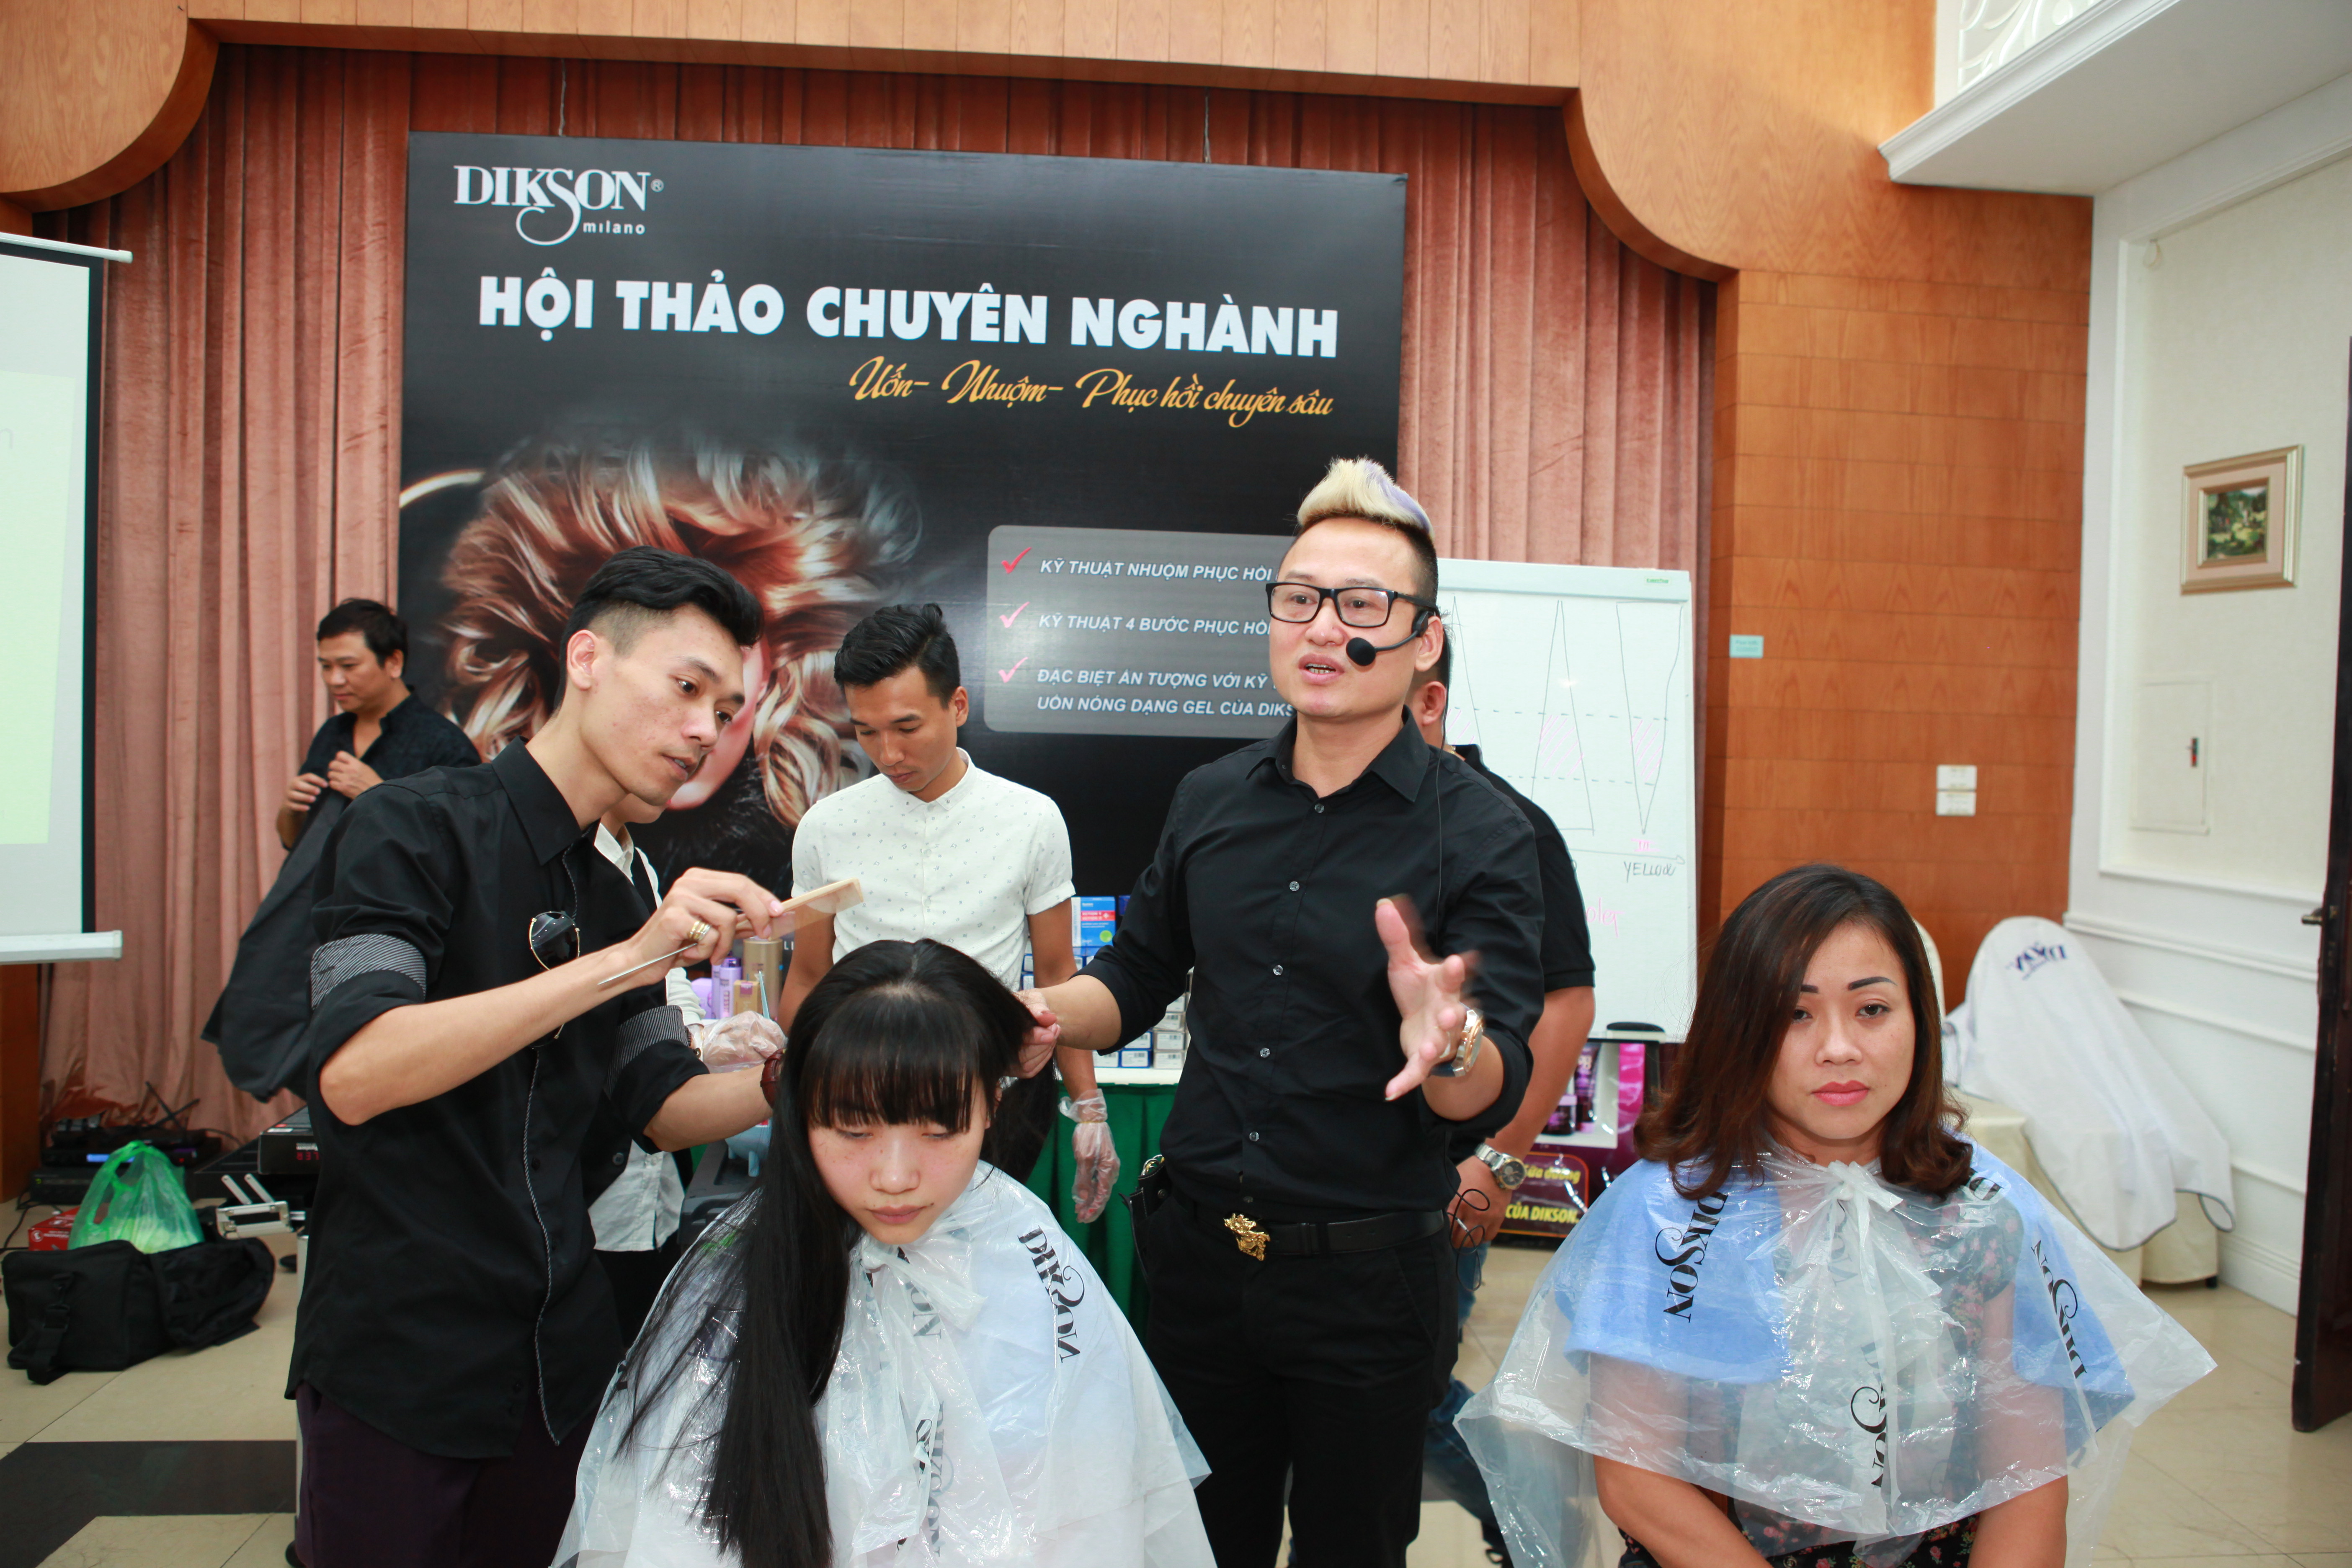 Chuyên gia - Giám đốc kỹ thuật Dikson miền Bắc Văn Sáu đào tạo trải nghiệm cho các salon chuyên nghiệp Hà Nội.